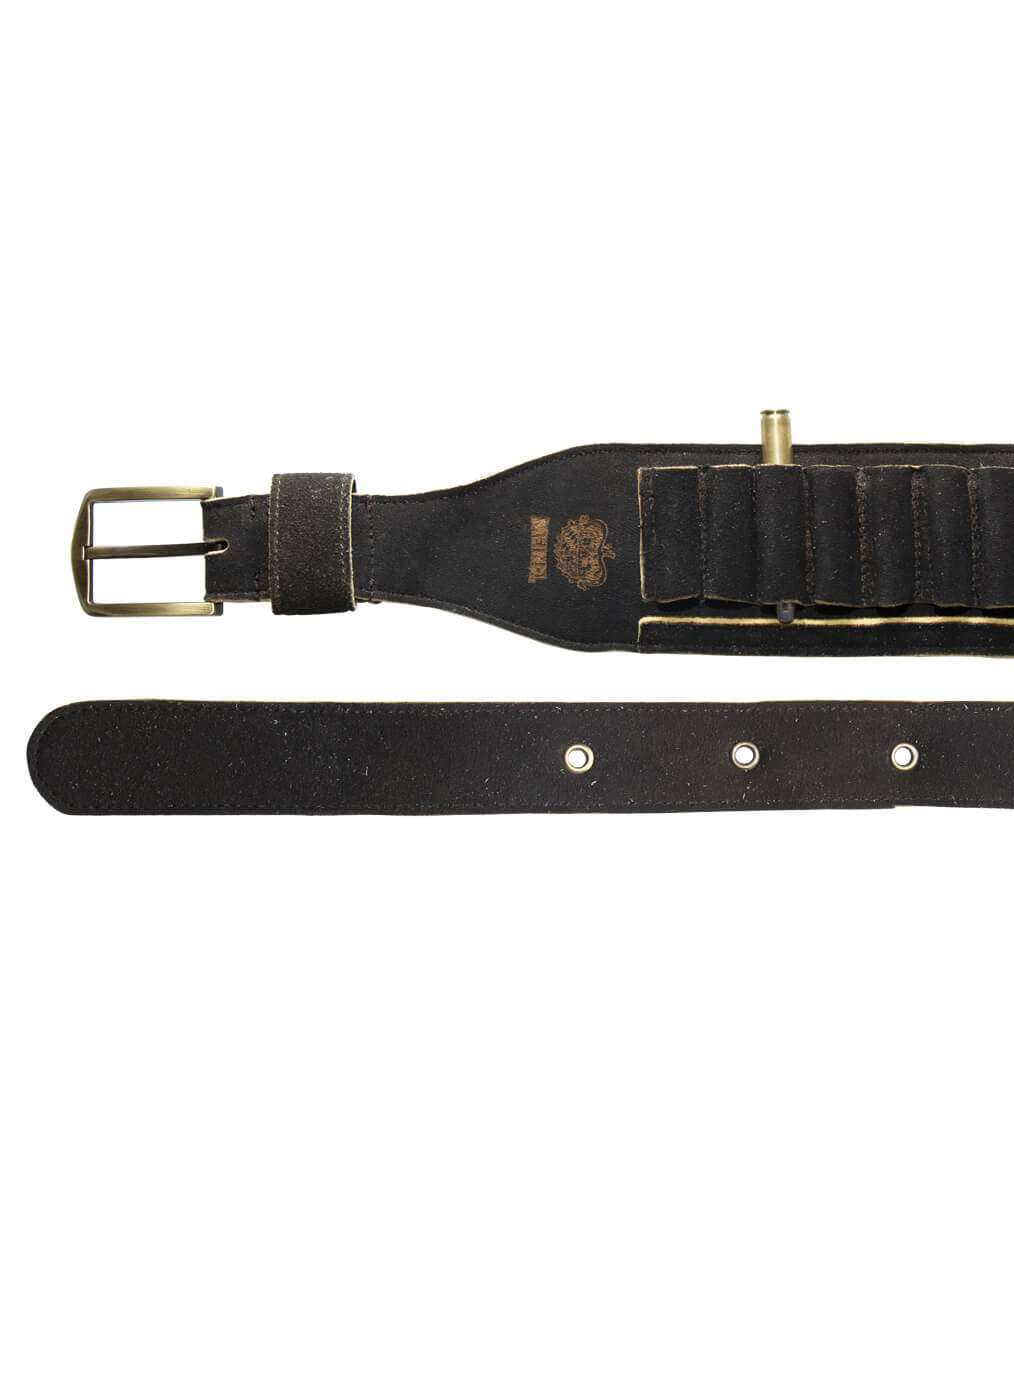 Cartridge Belt Dear Leather, maple